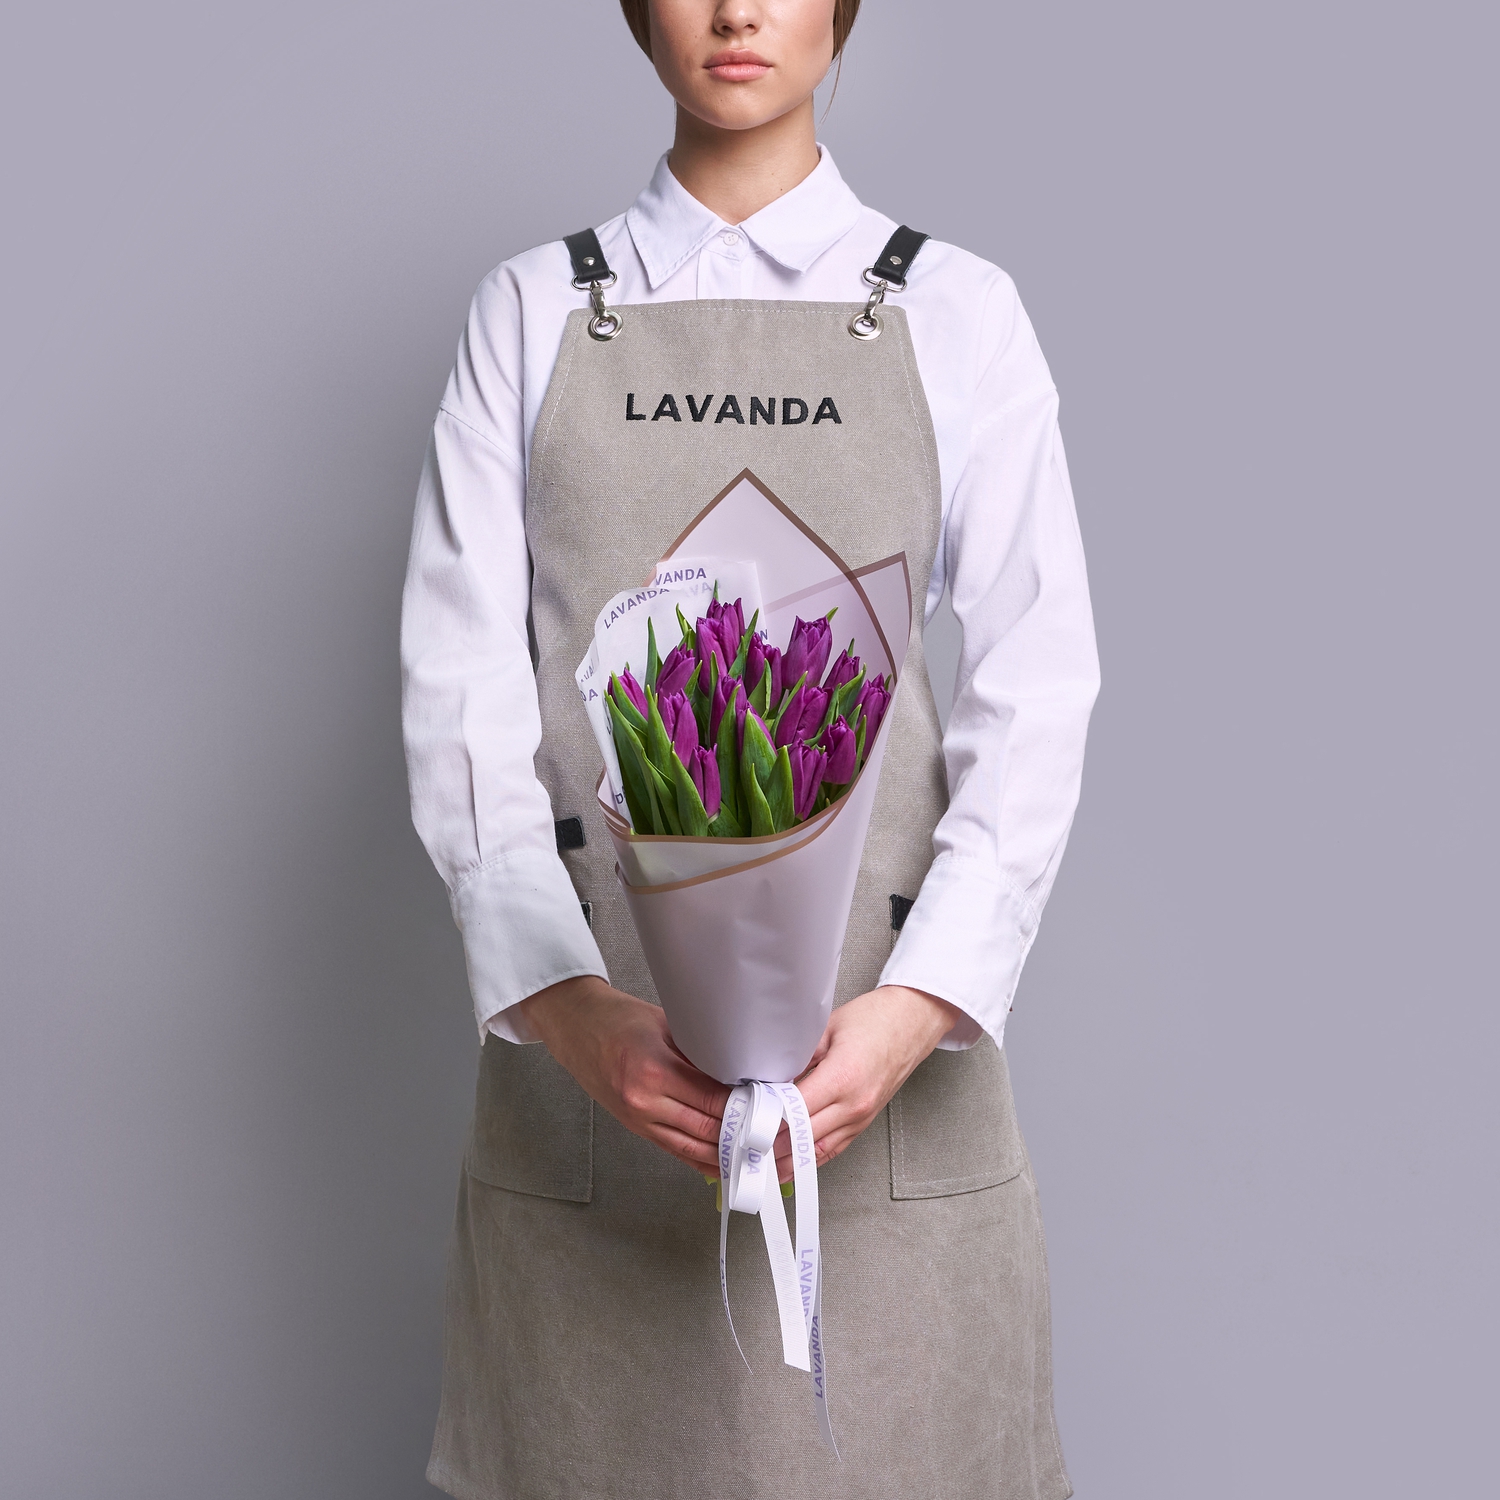 15 фиолетовых тюльпанов в матовой пленке